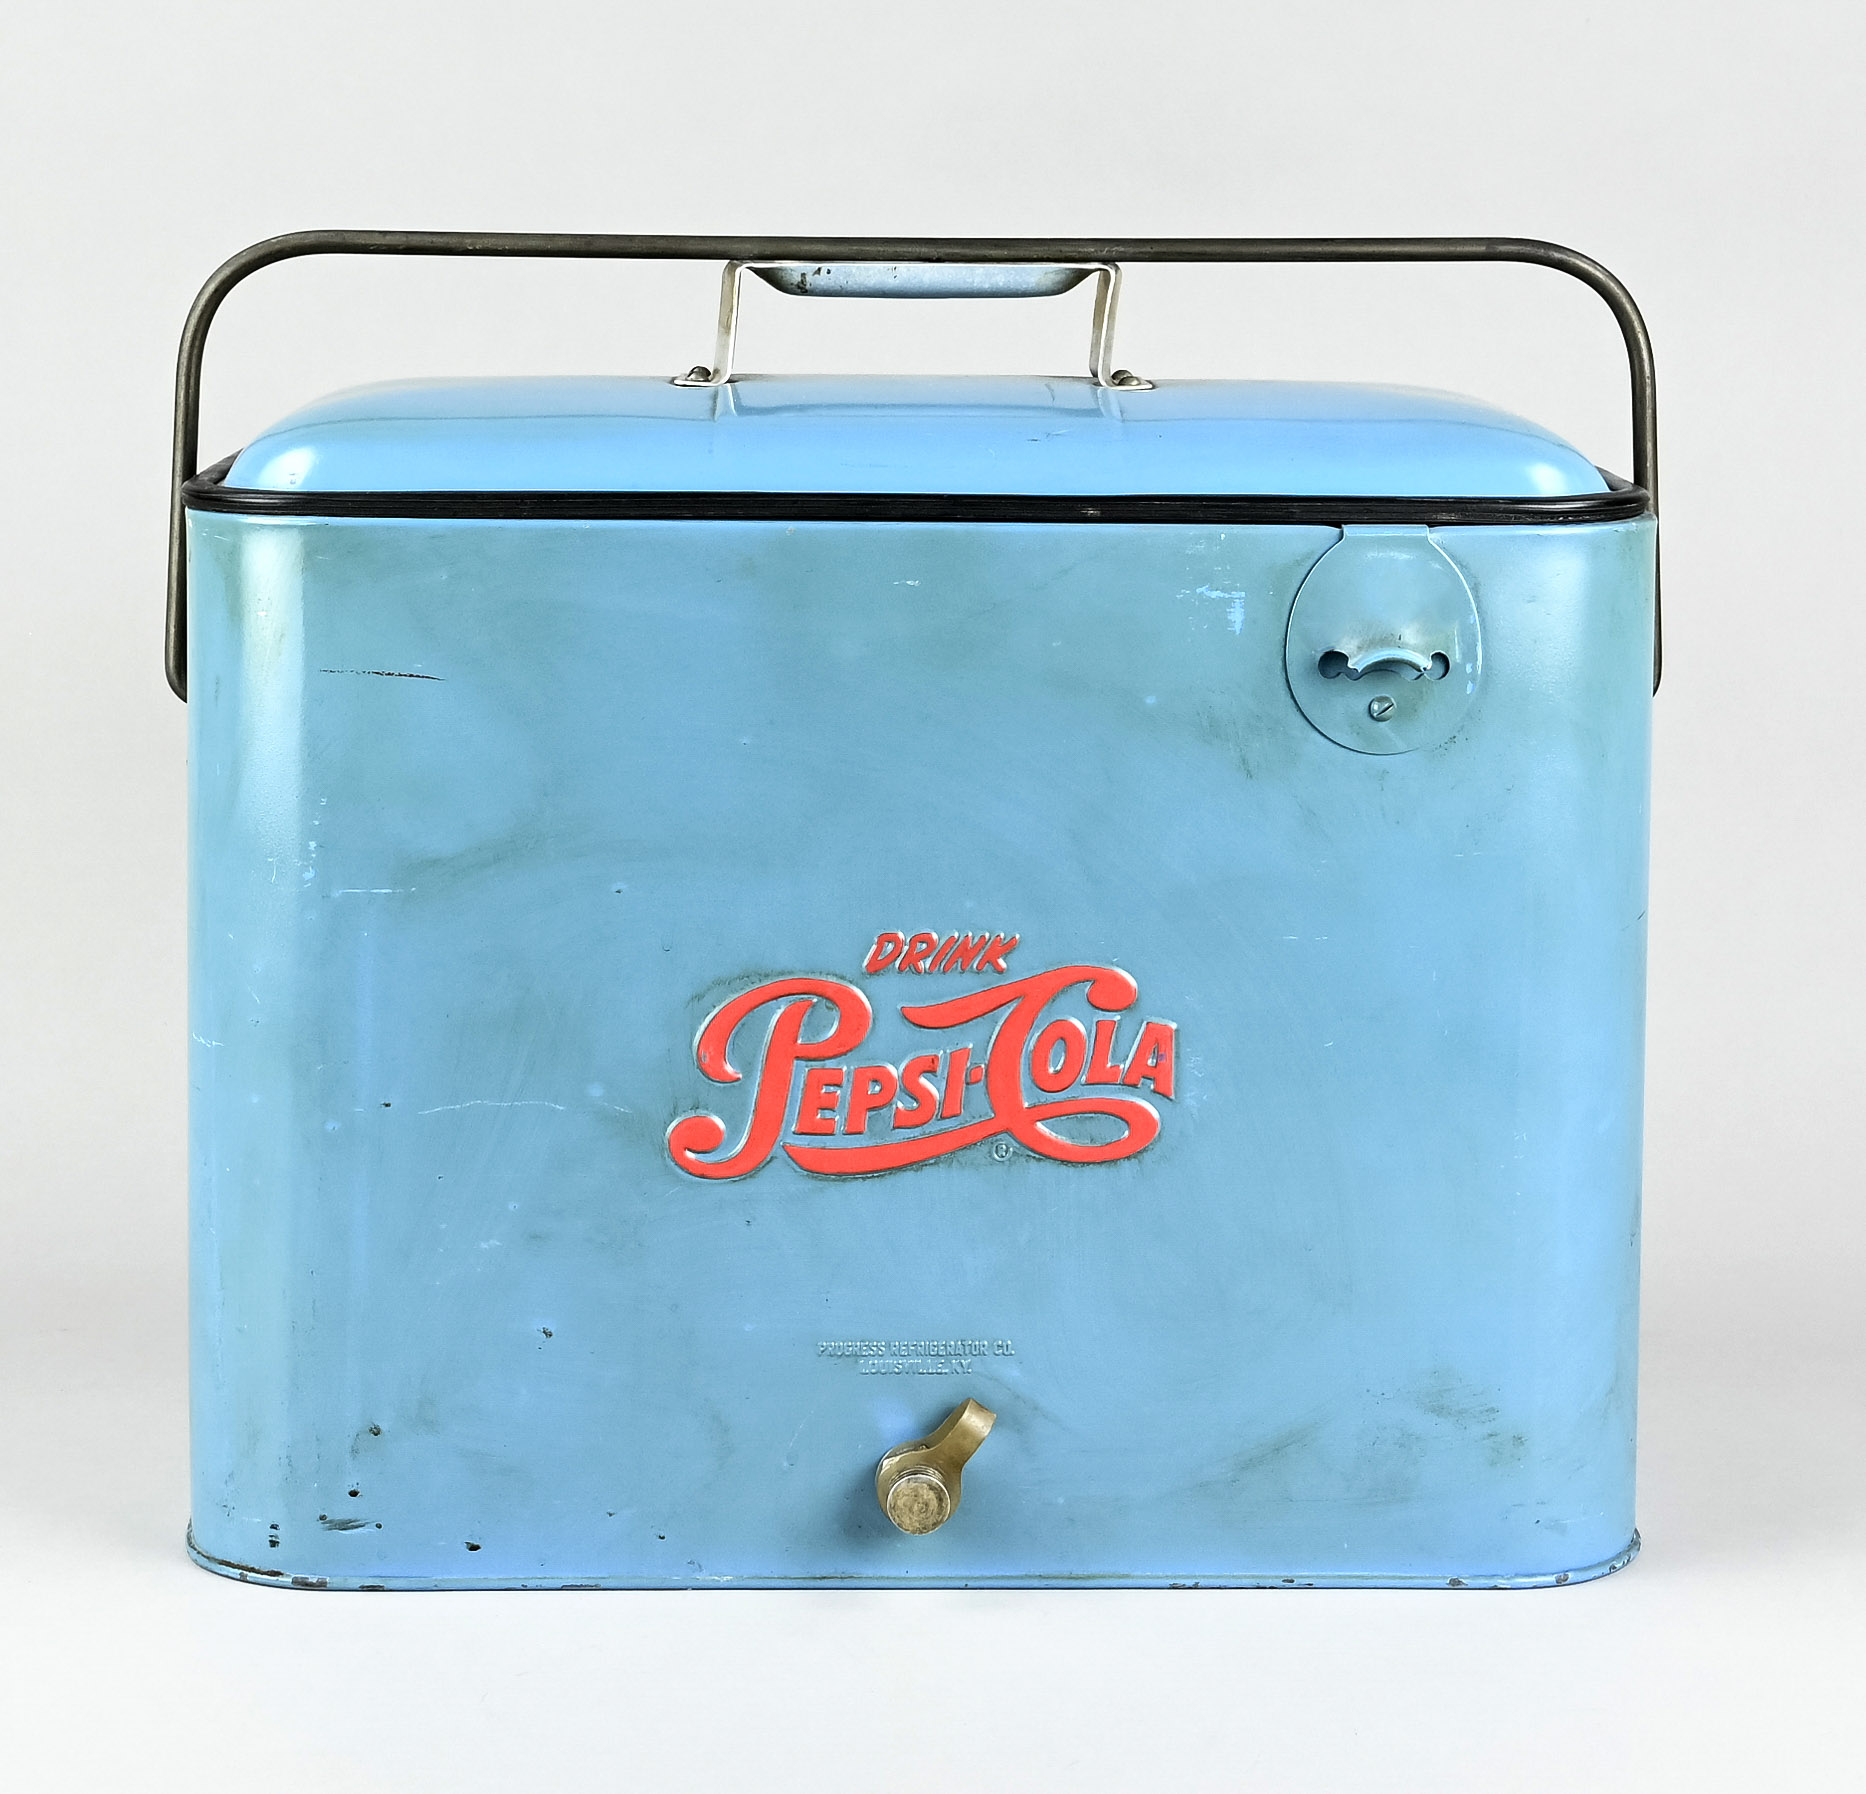 Originale vintage Kühlbox von Pepsi Cola USA um 1930/50, Progress Refrigerator Co., Louisville. KY. - Bild 3 aus 5